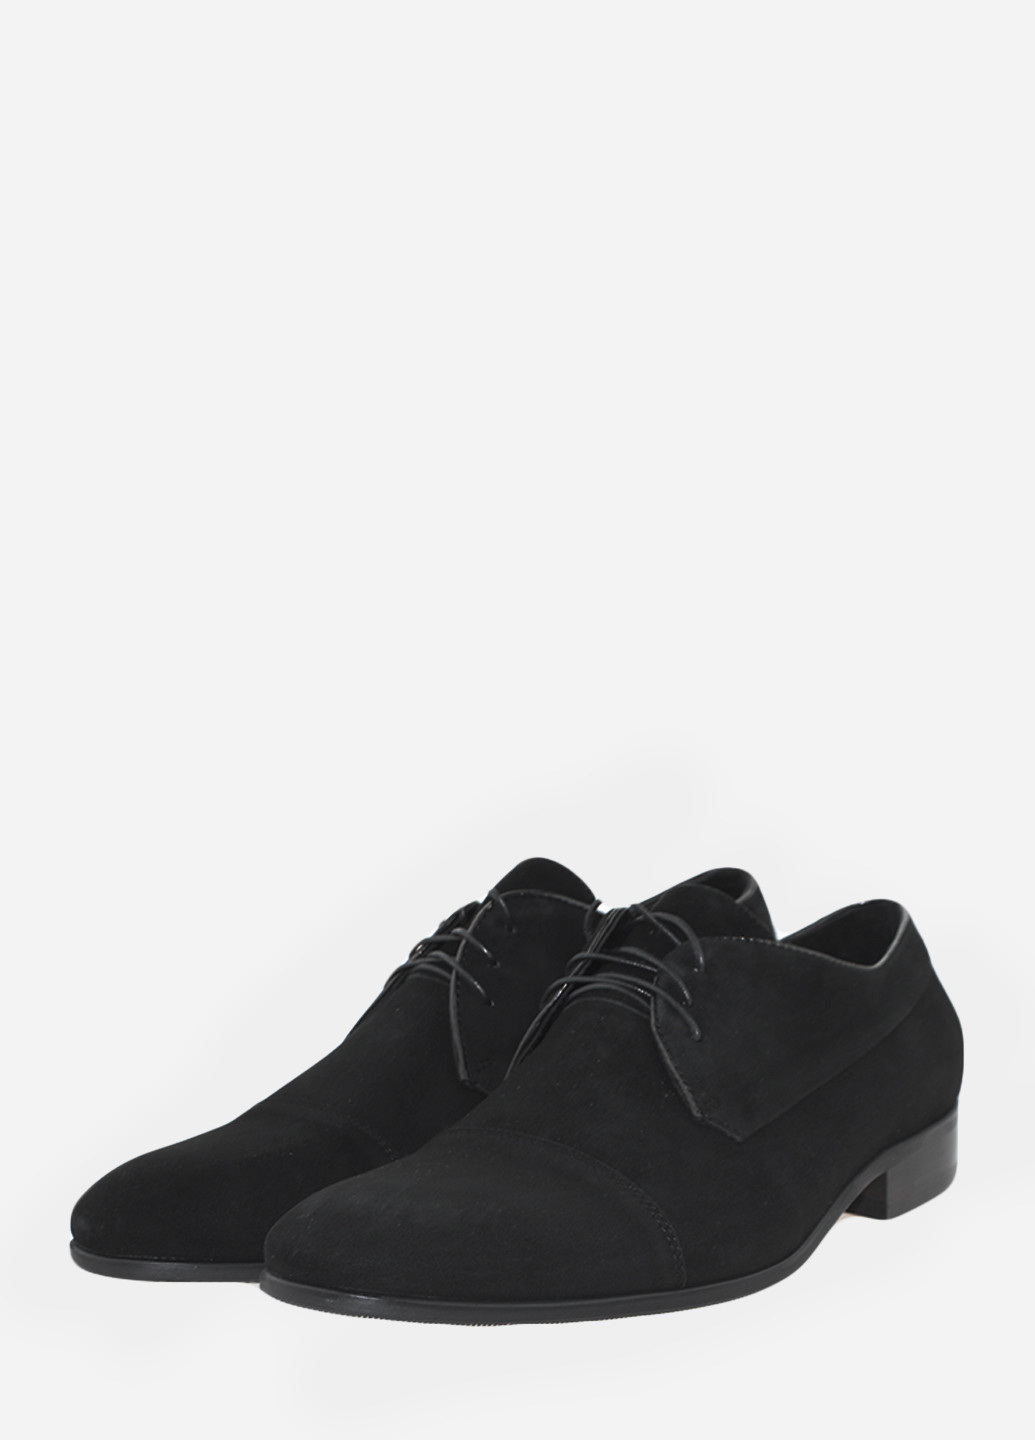 Черные туфли ri2329-7-11 черный Icos